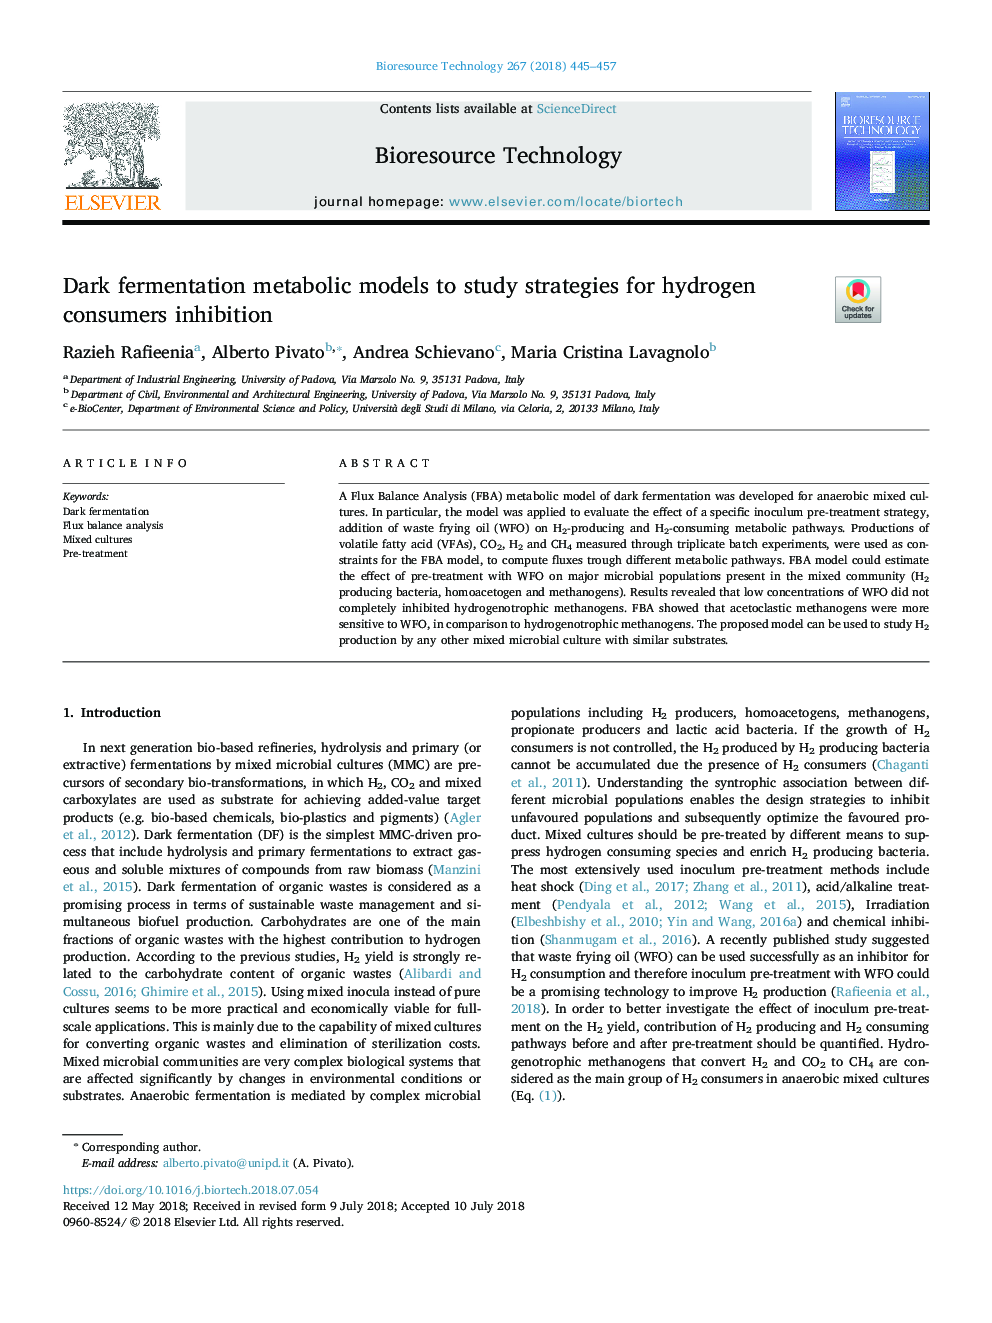 مدل های متابولیسم تخمیر تیره برای مطالعه راهبردهای مهار مصرف هیدروژن 